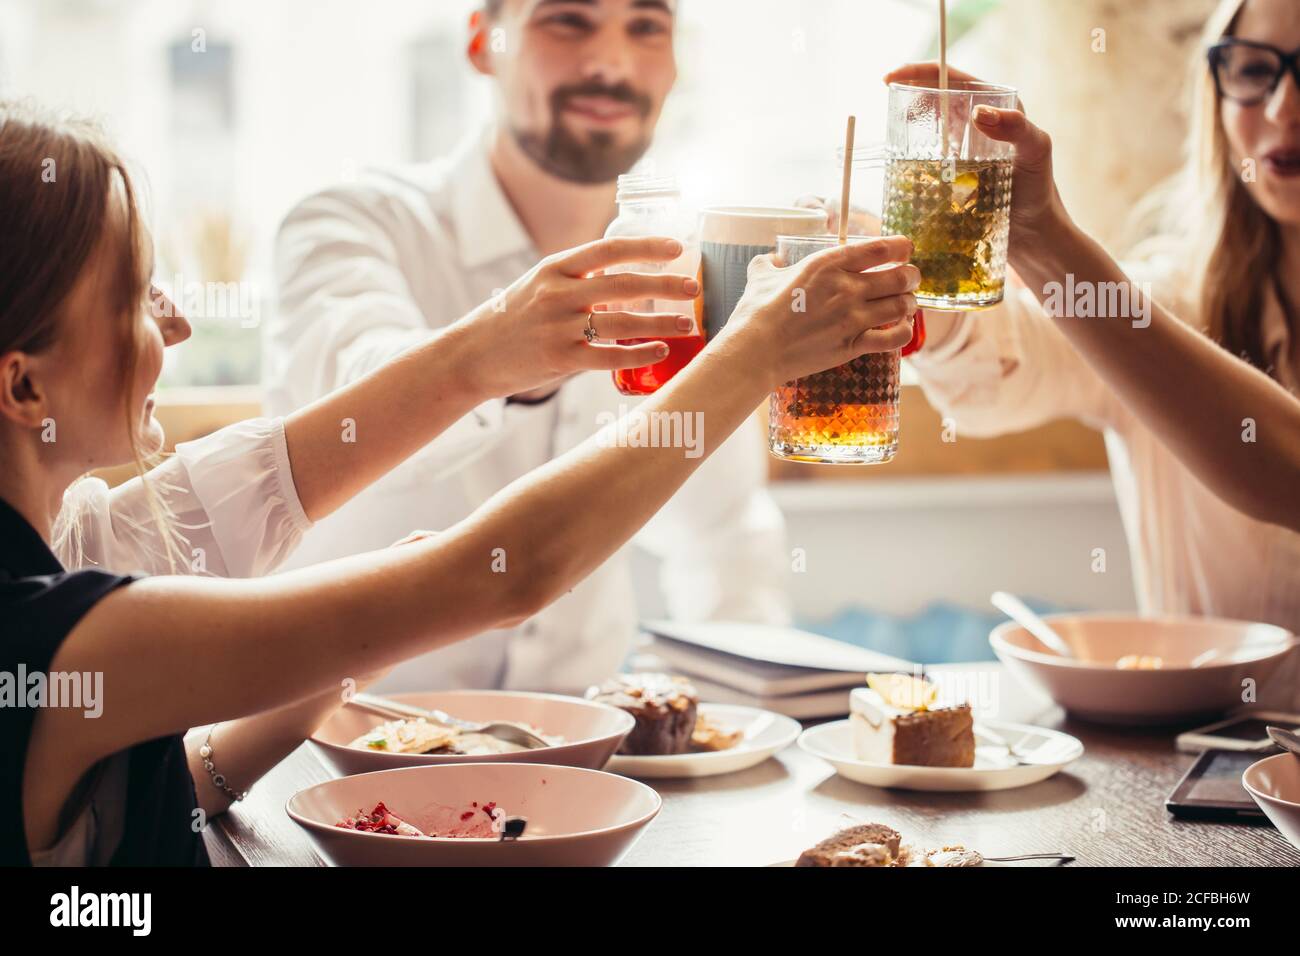 Persone Cheers celebrazione Toast felicità stare insieme concetto Foto Stock